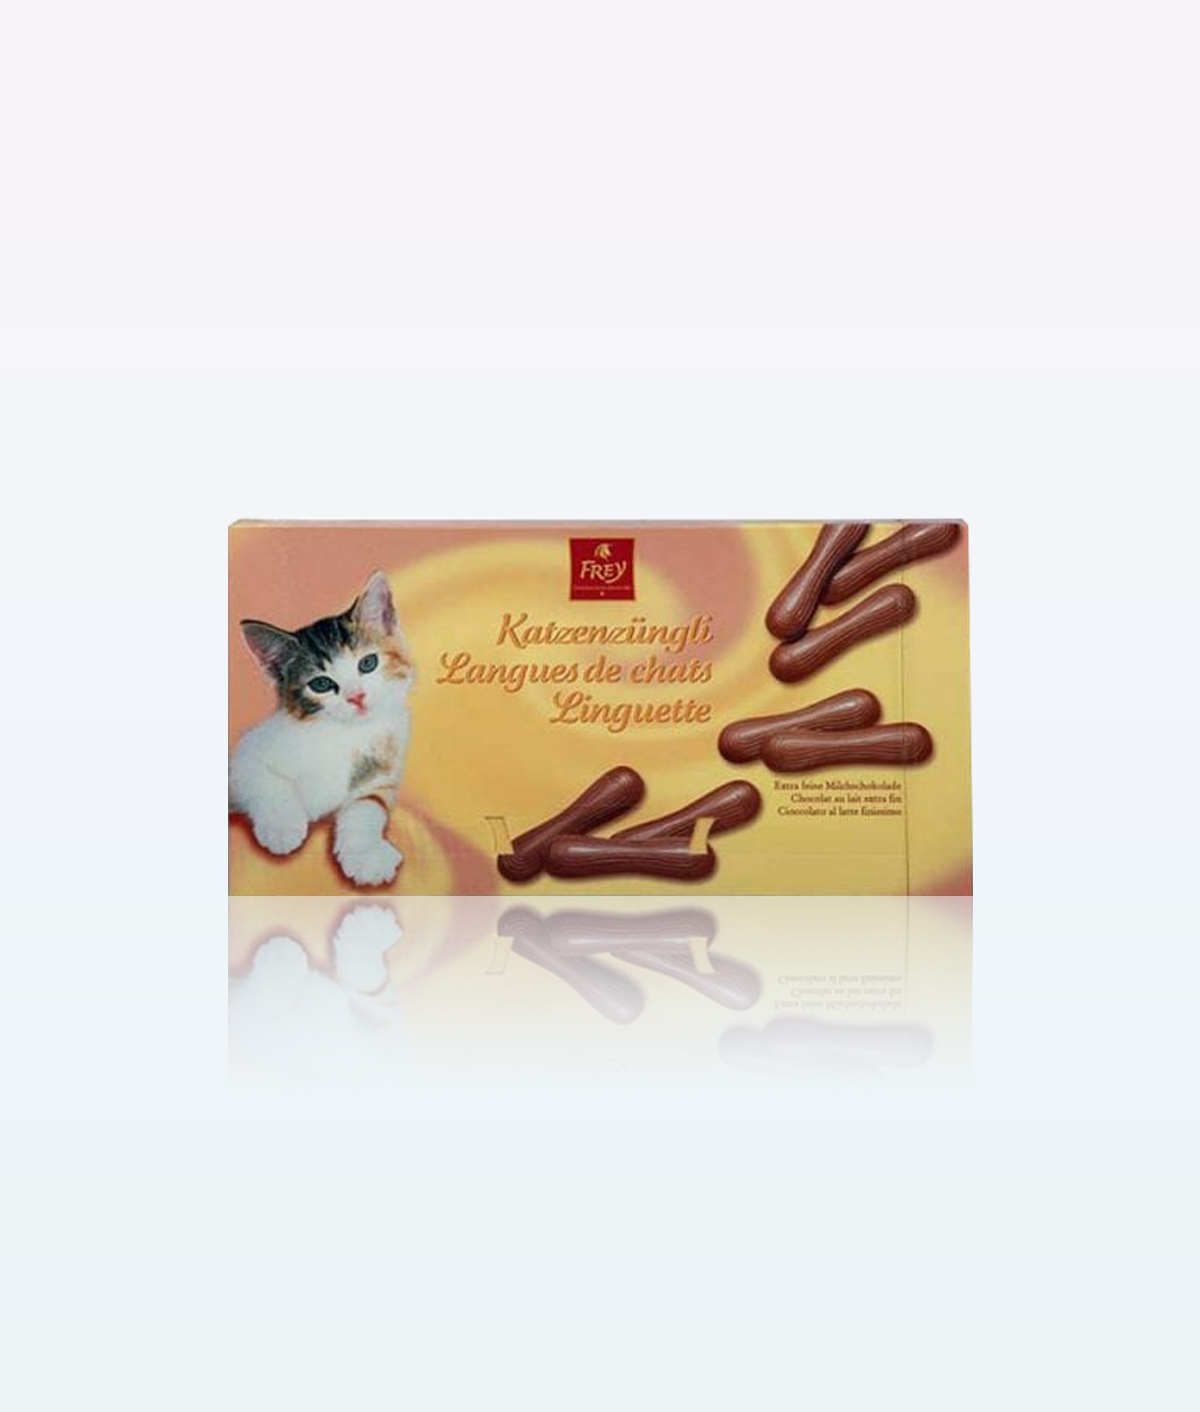 Frey Extra ”Katzenzüngli” Milk Chocolate 125g